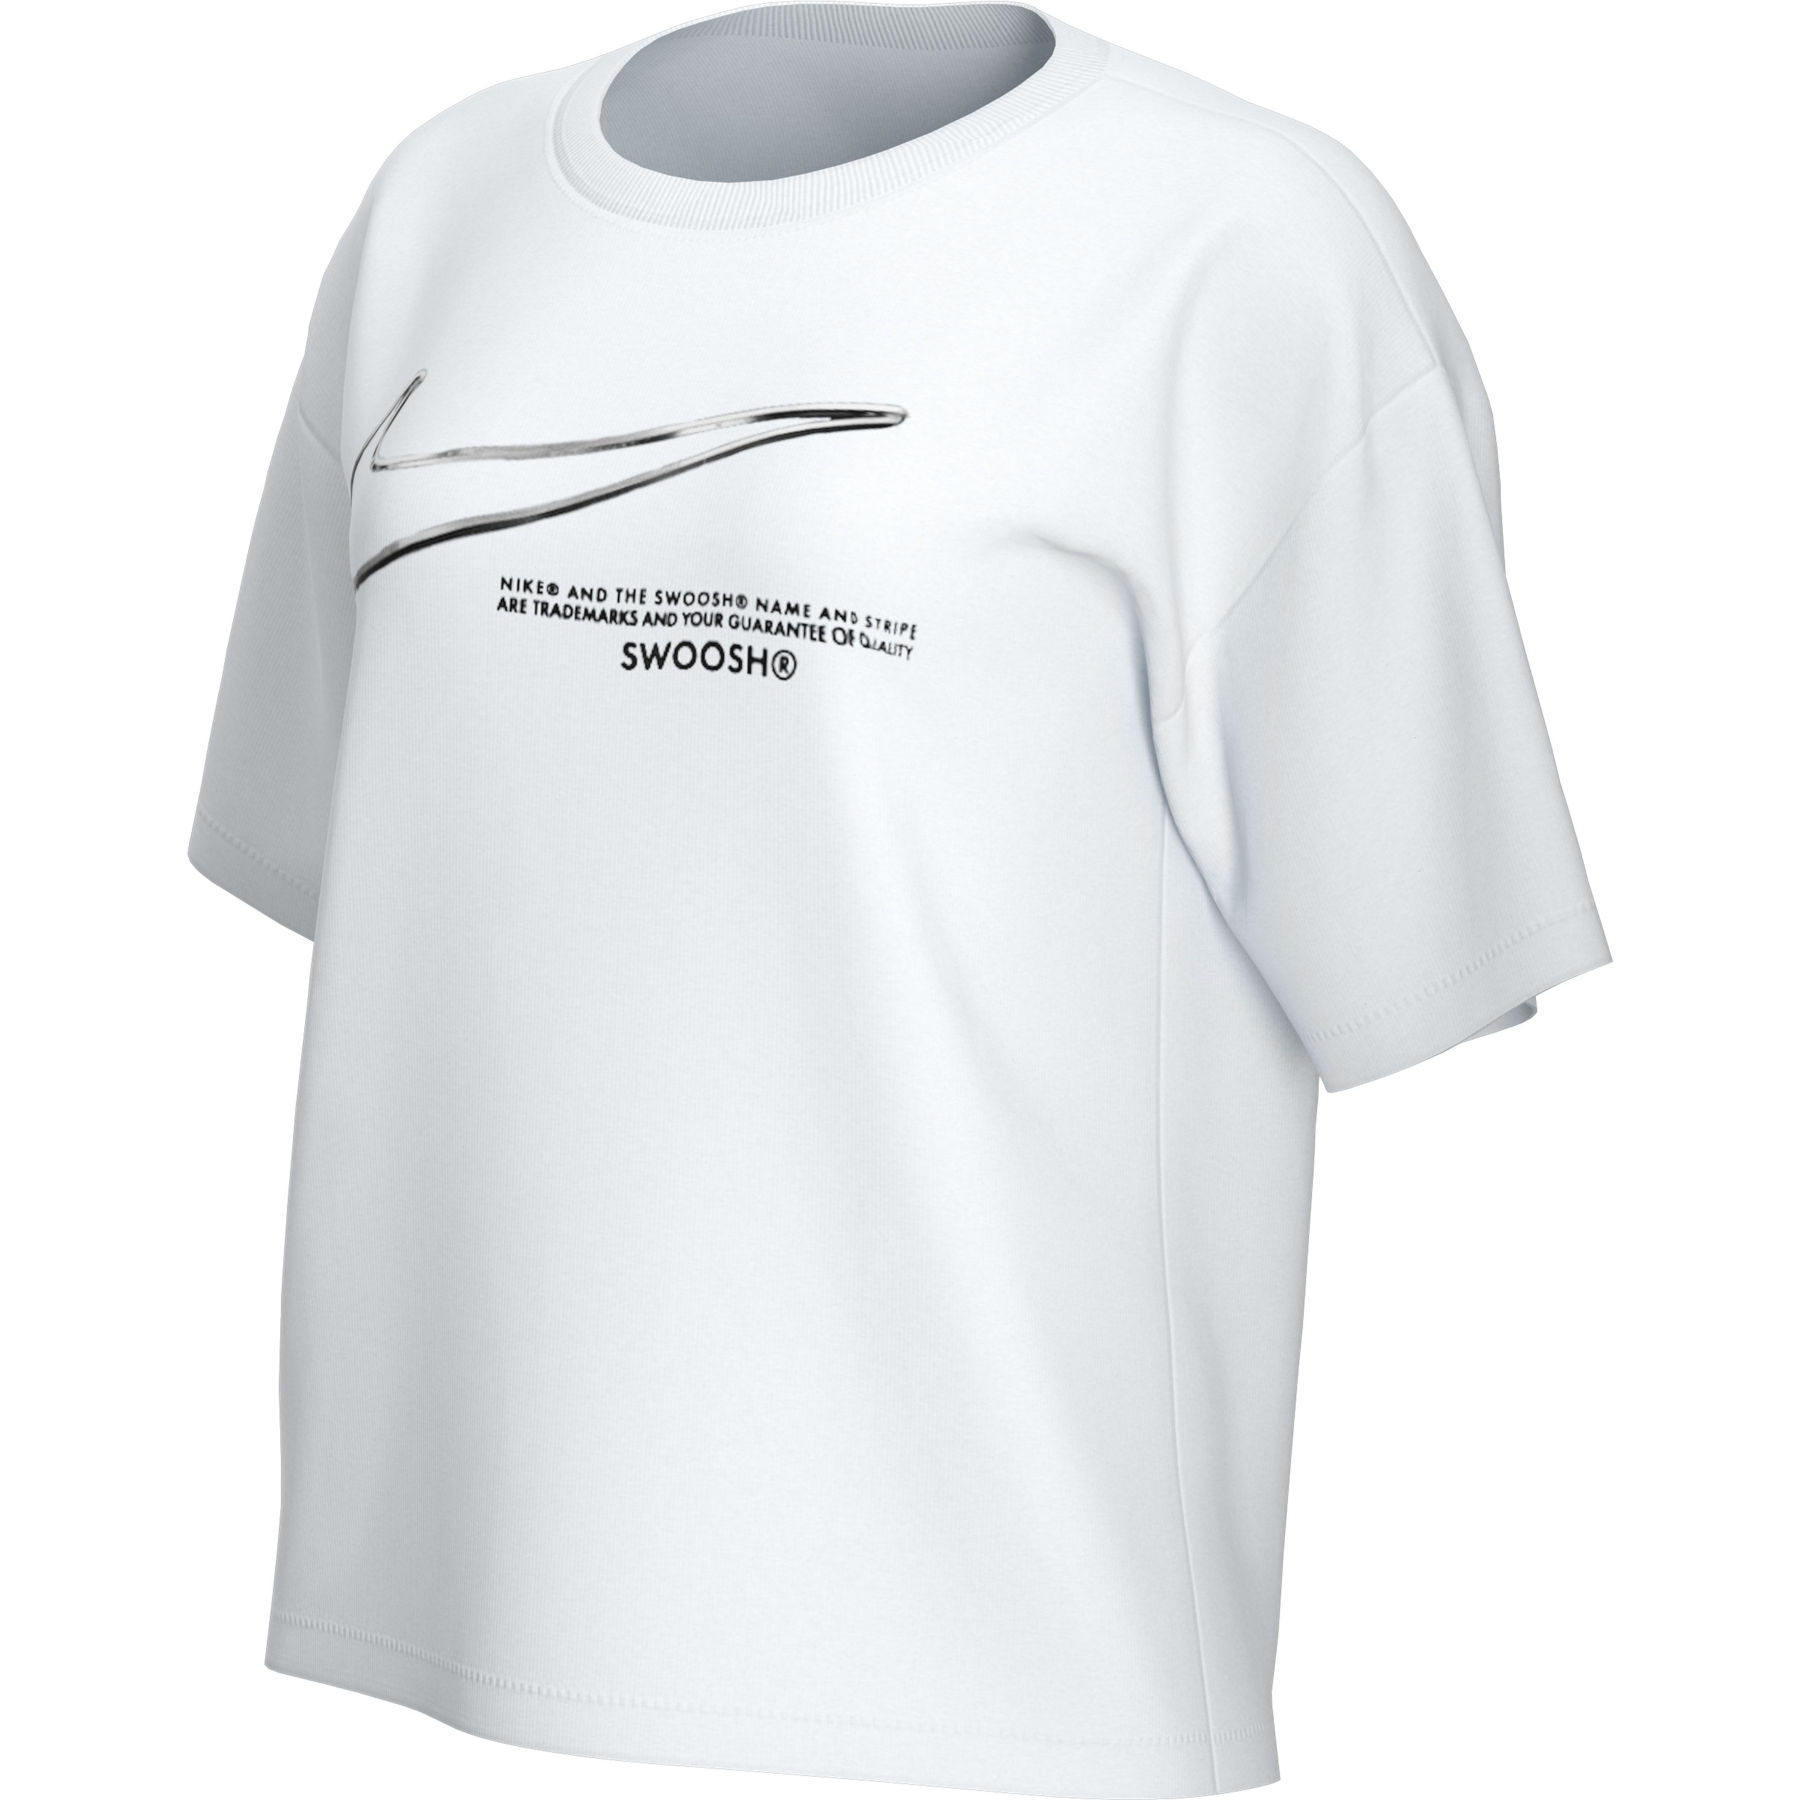 Bild von Nike Sportswear Swoosh Damen T-Shirt - white DB9811-100